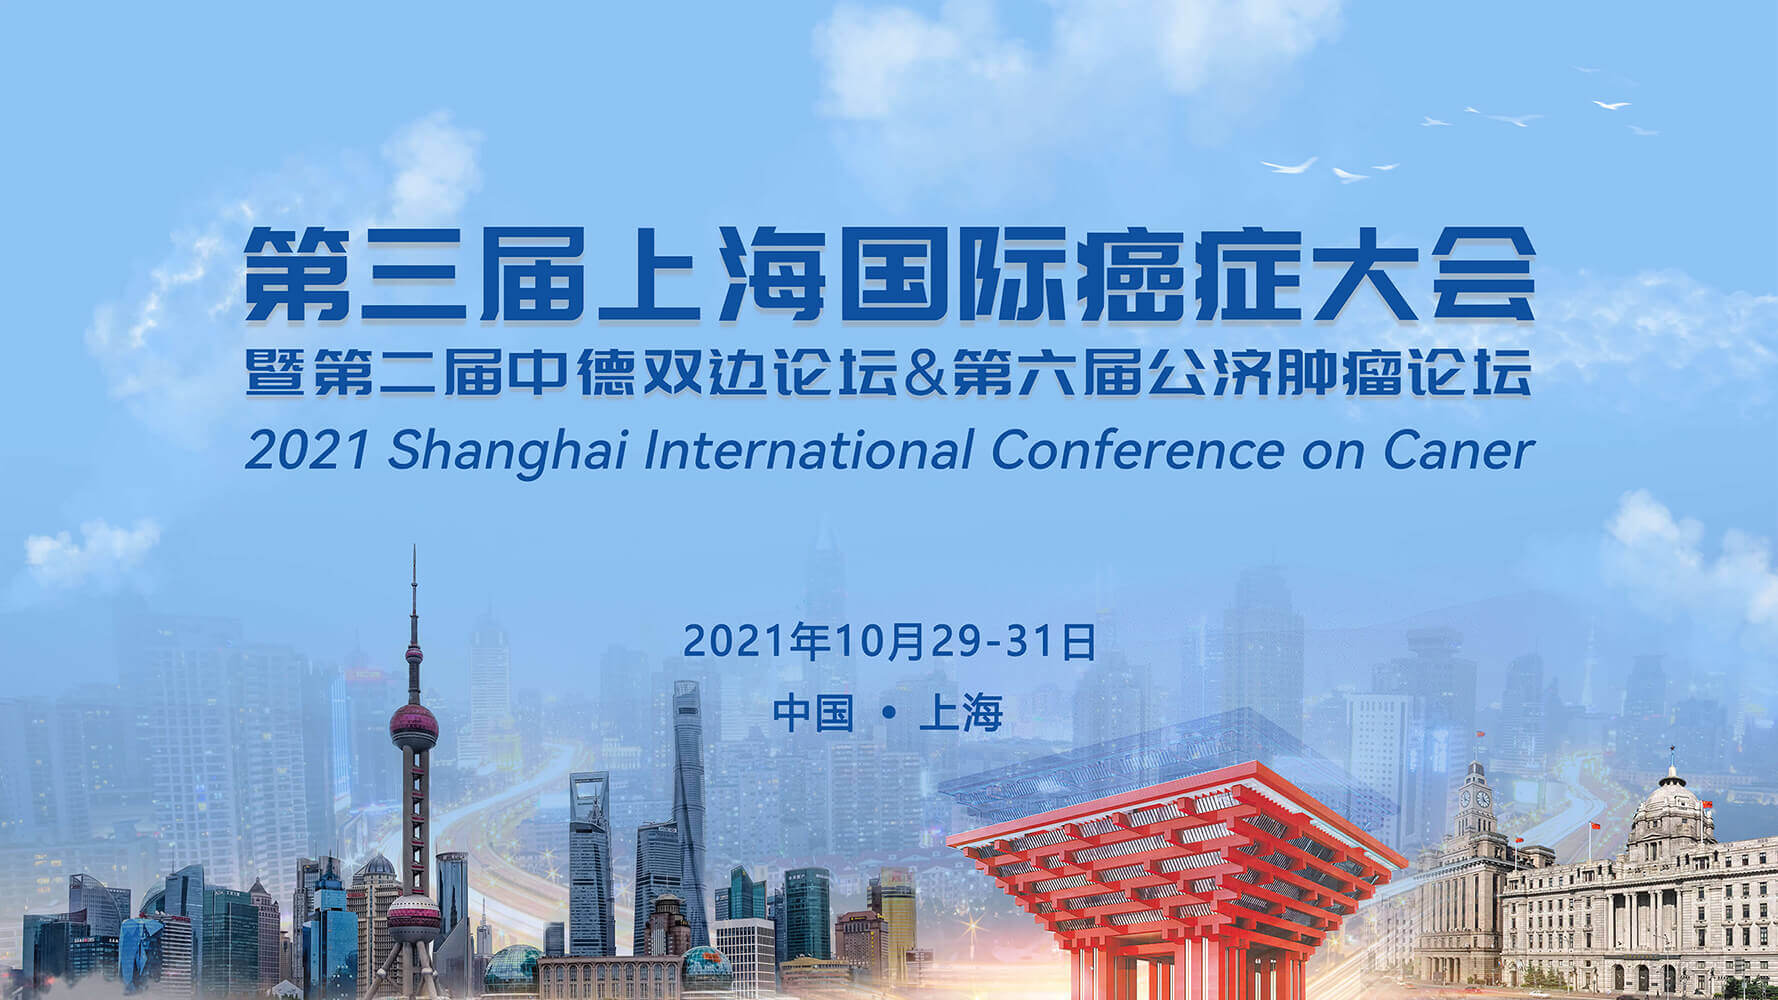 会议通知 | 翌圣生物邀您共赴第三届上海国际癌症大会